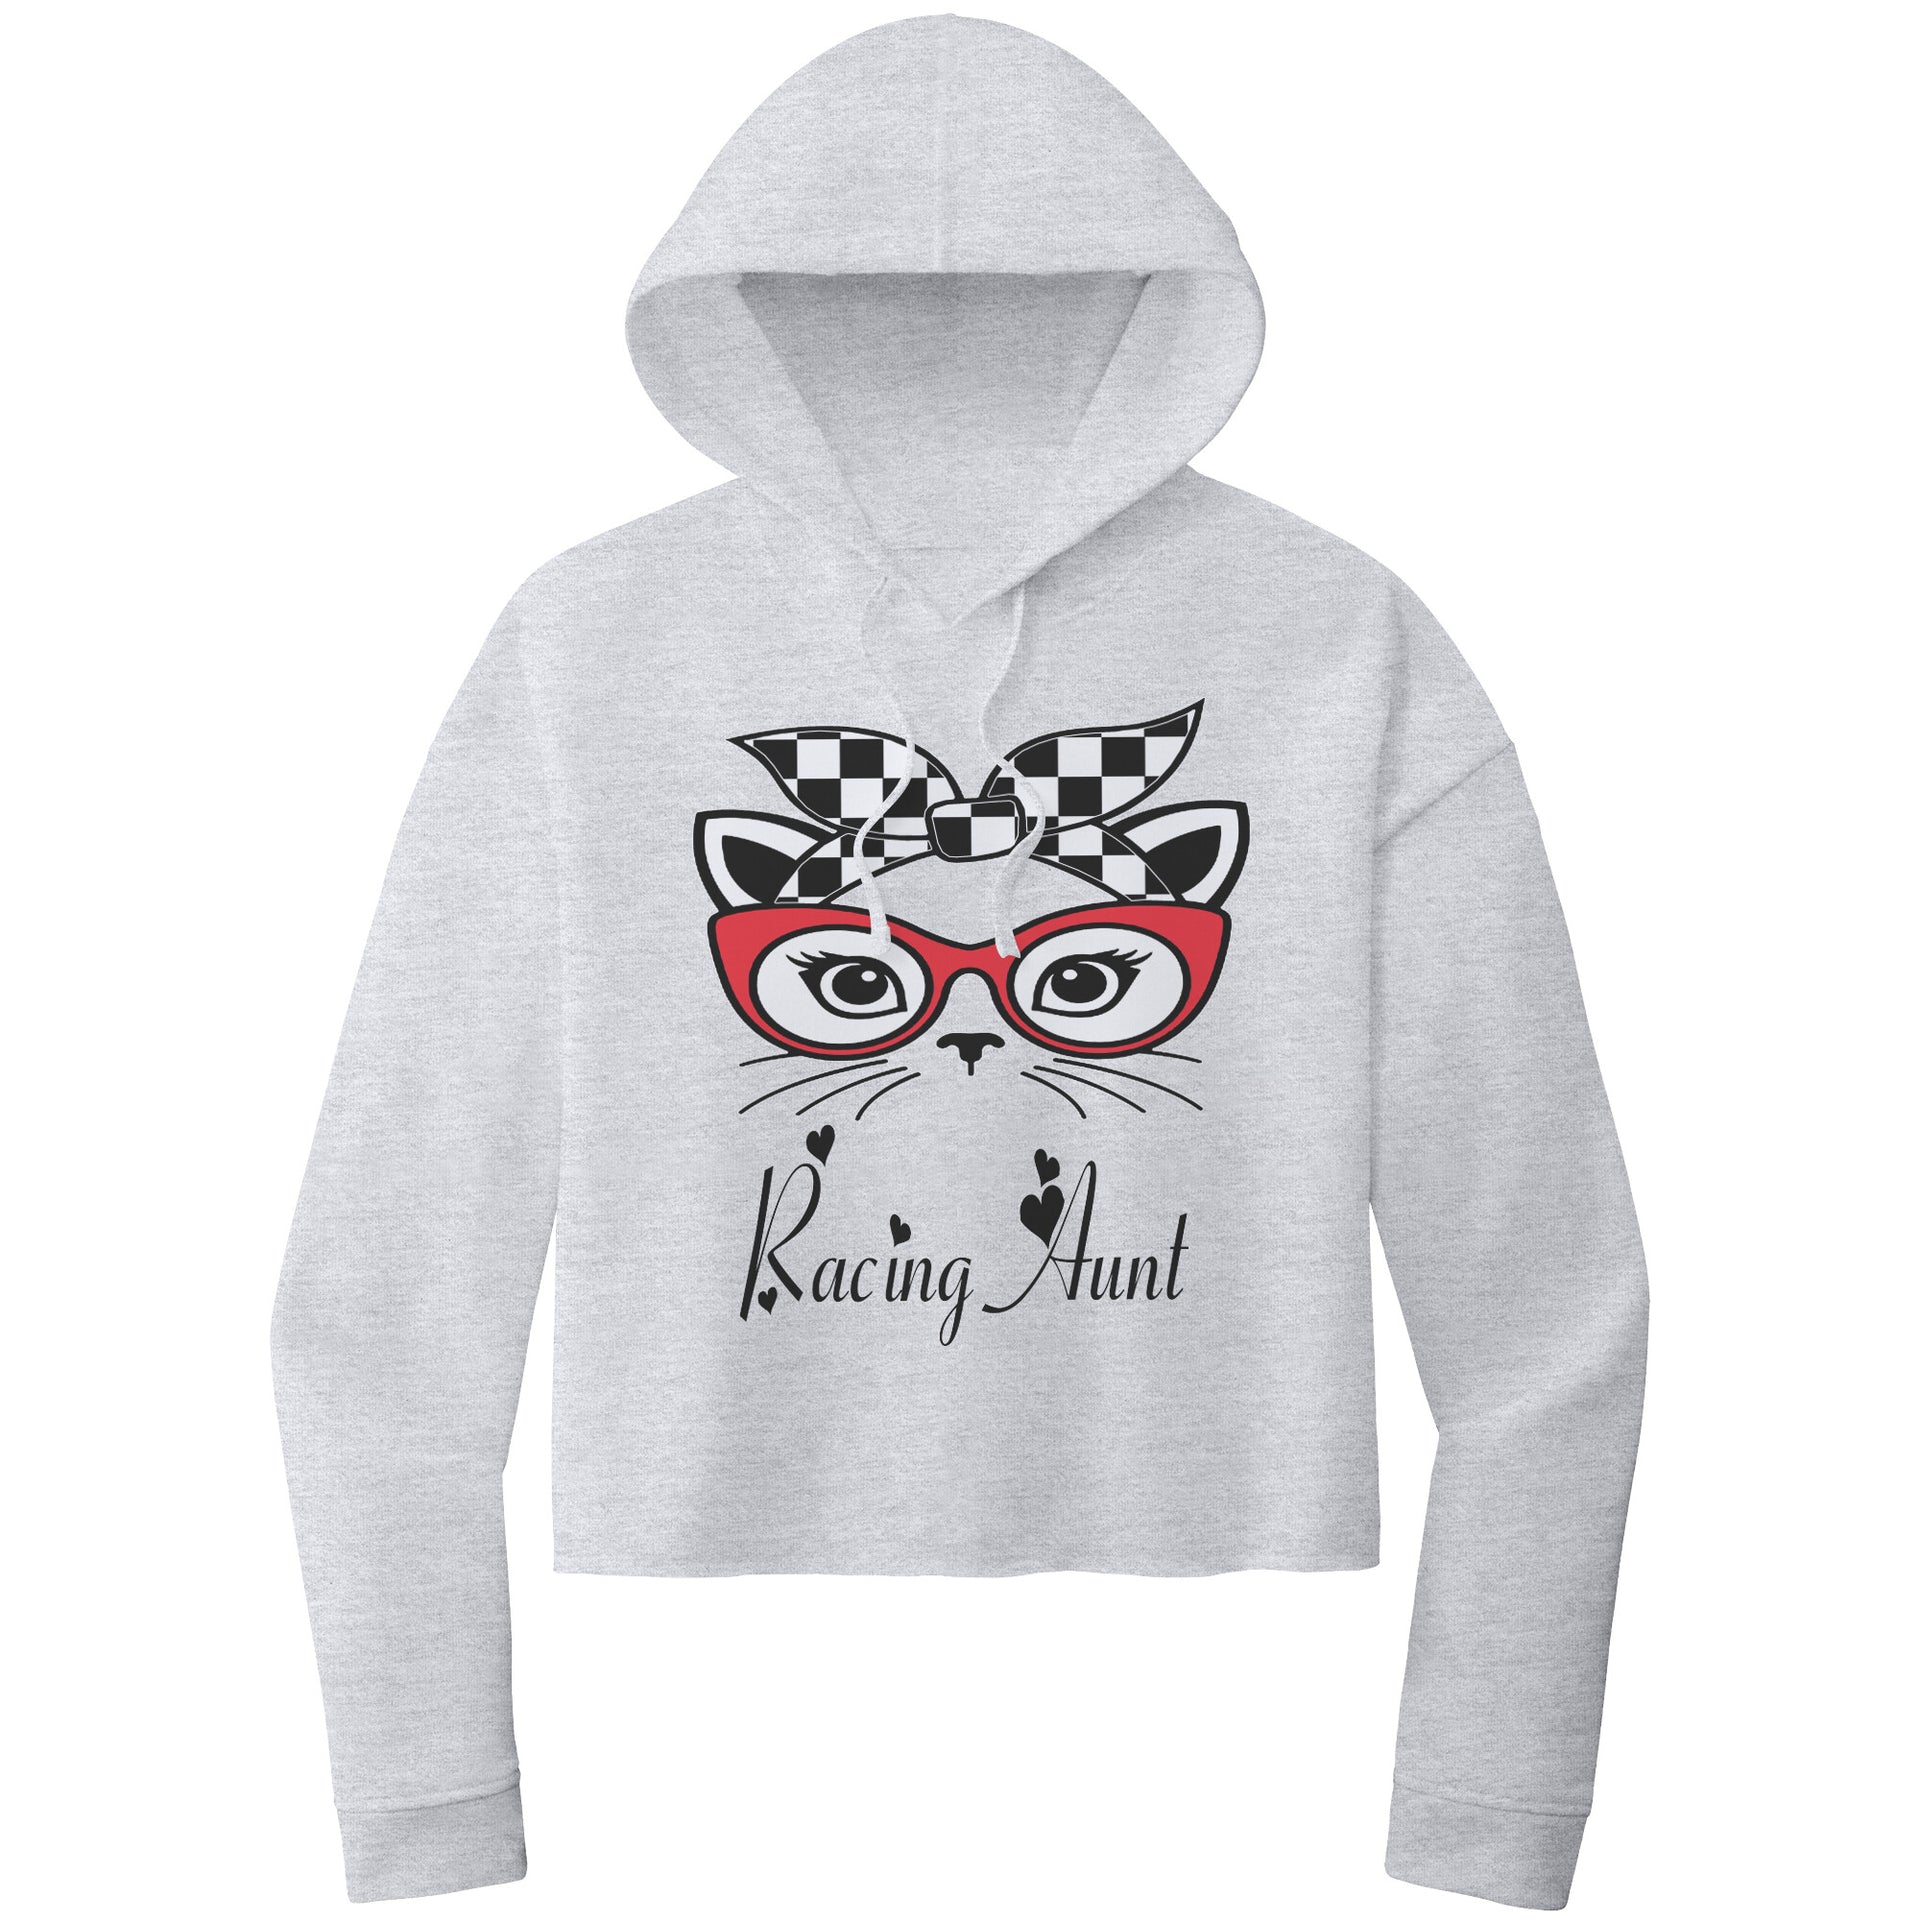 Racing Aunt Crop top hoodie